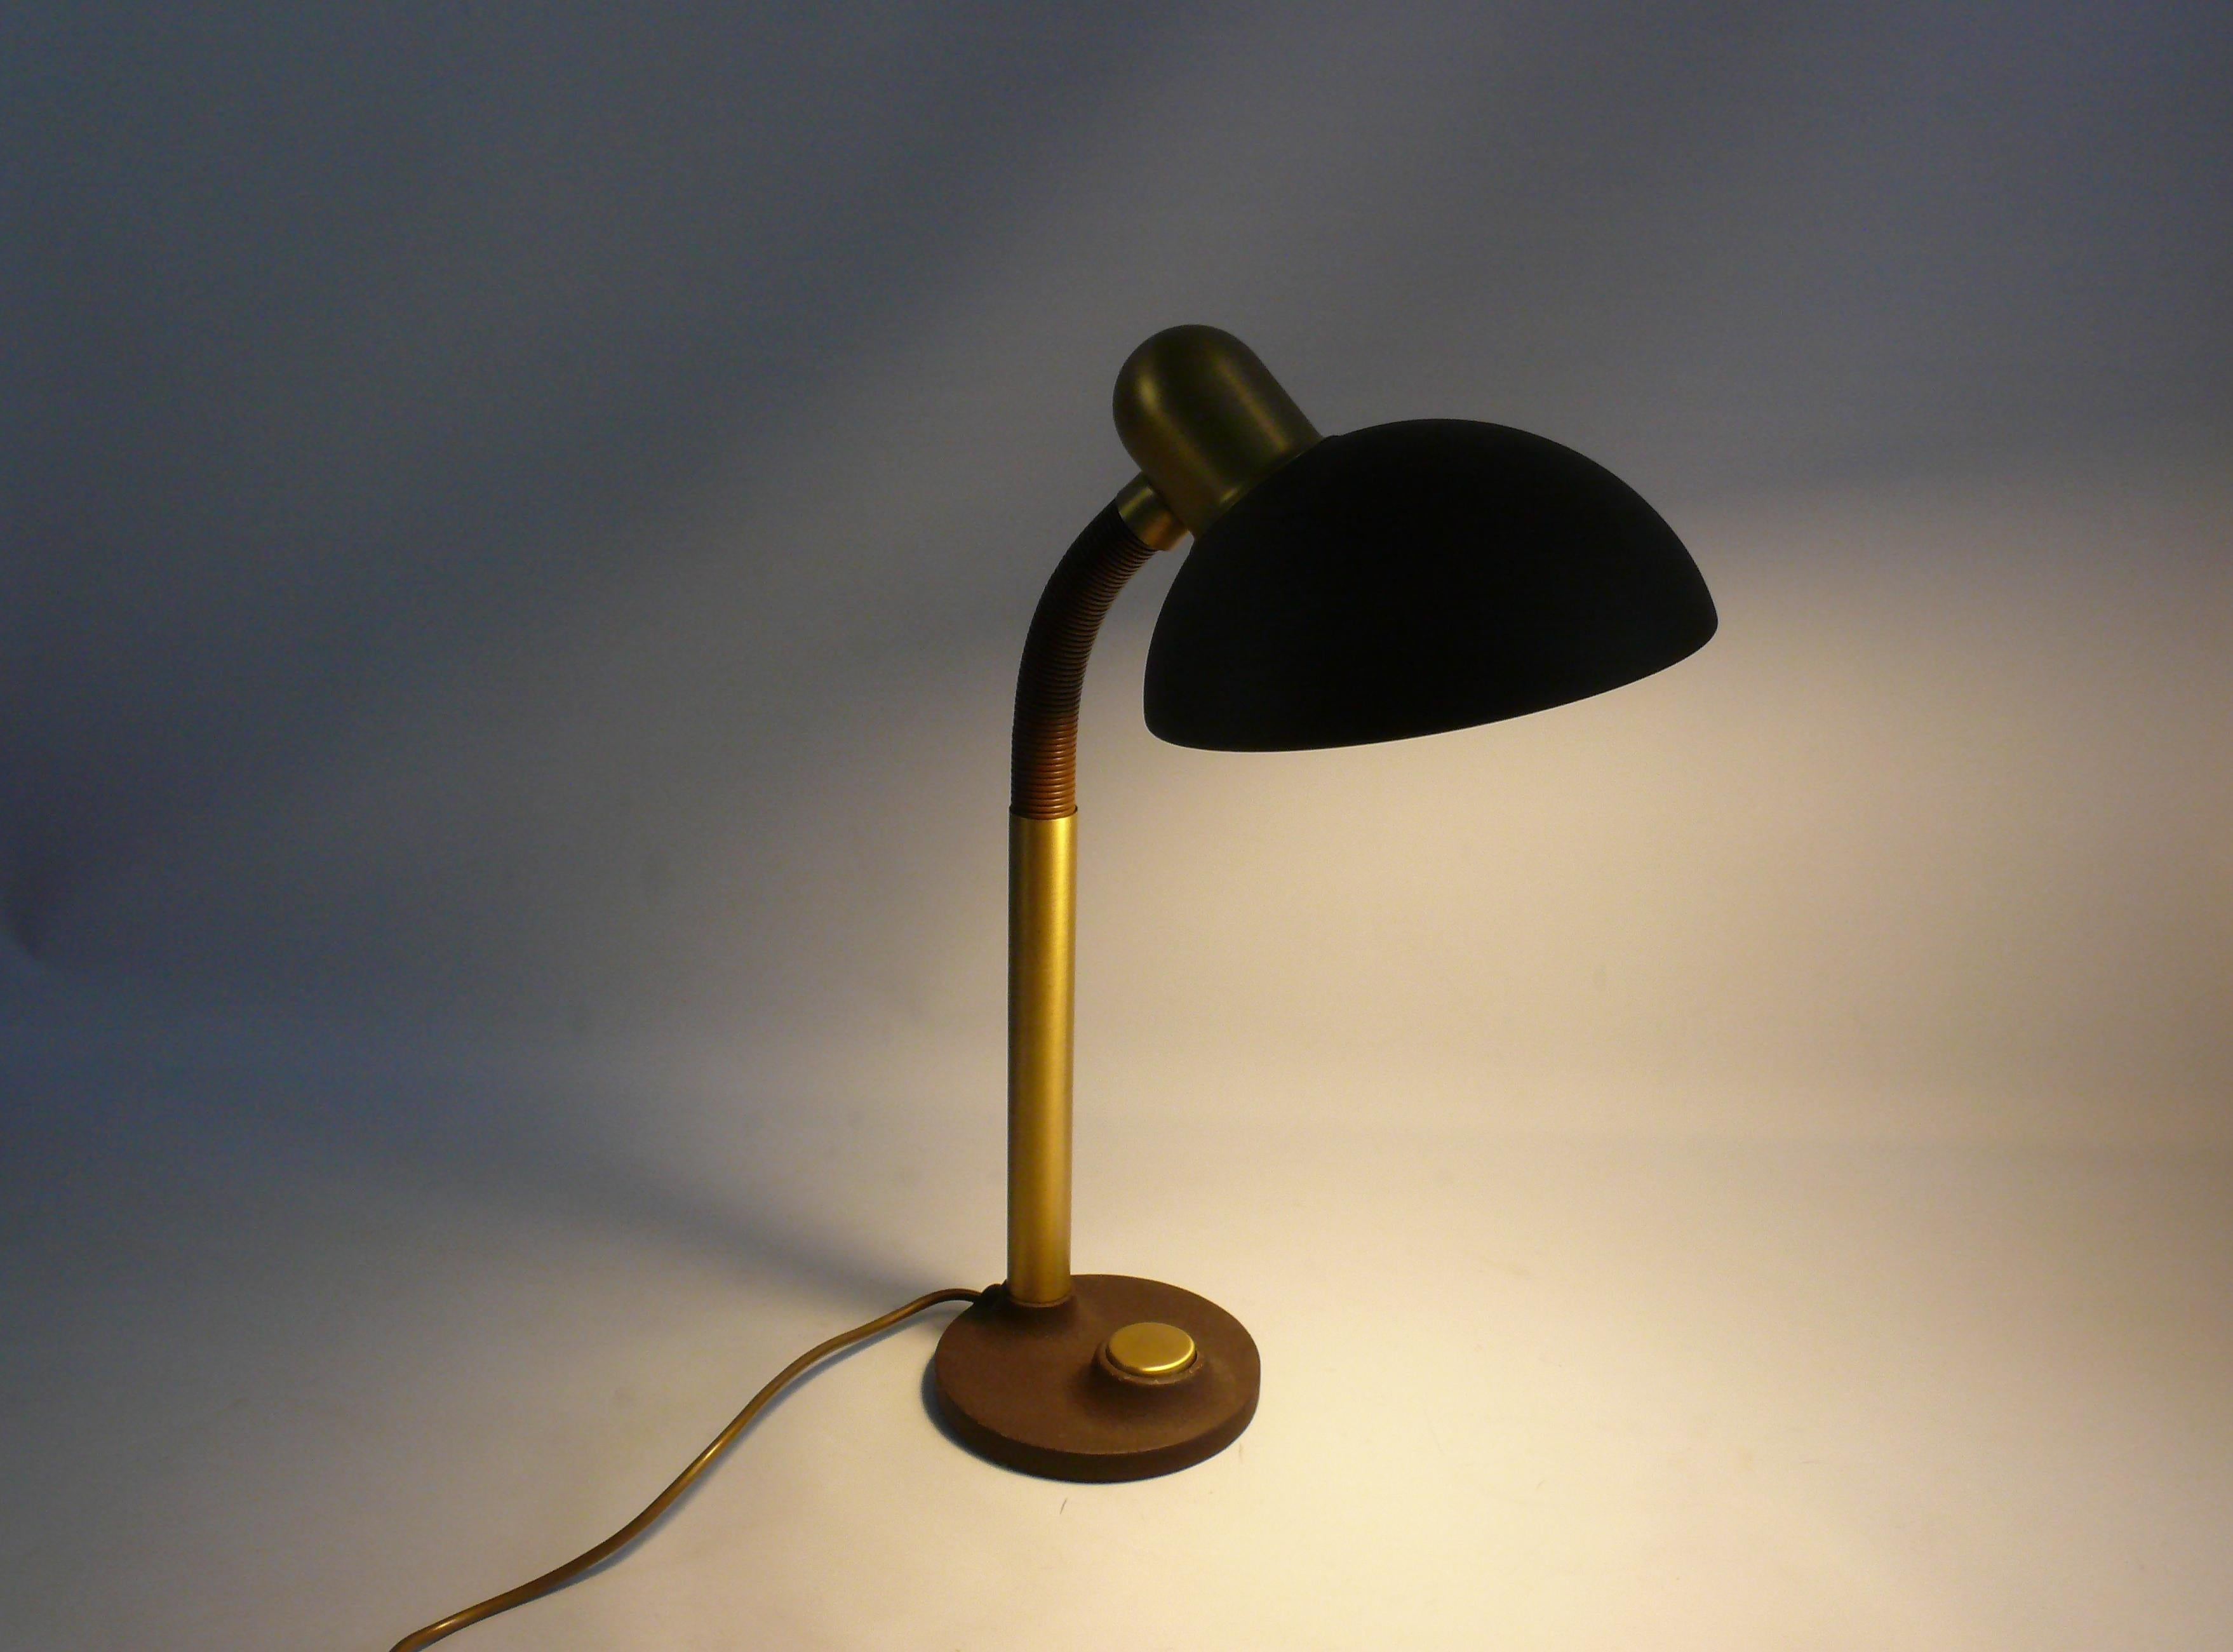 Rare, très grande lampe de bureau des années 1960 - 1970 par Egon Hillebrand, modèle 7630. La lampe est fabriquée en métal et en laiton et possède un col de cygne recouvert de plastique. La lampe de bureau est grande, lourde et très solide. La